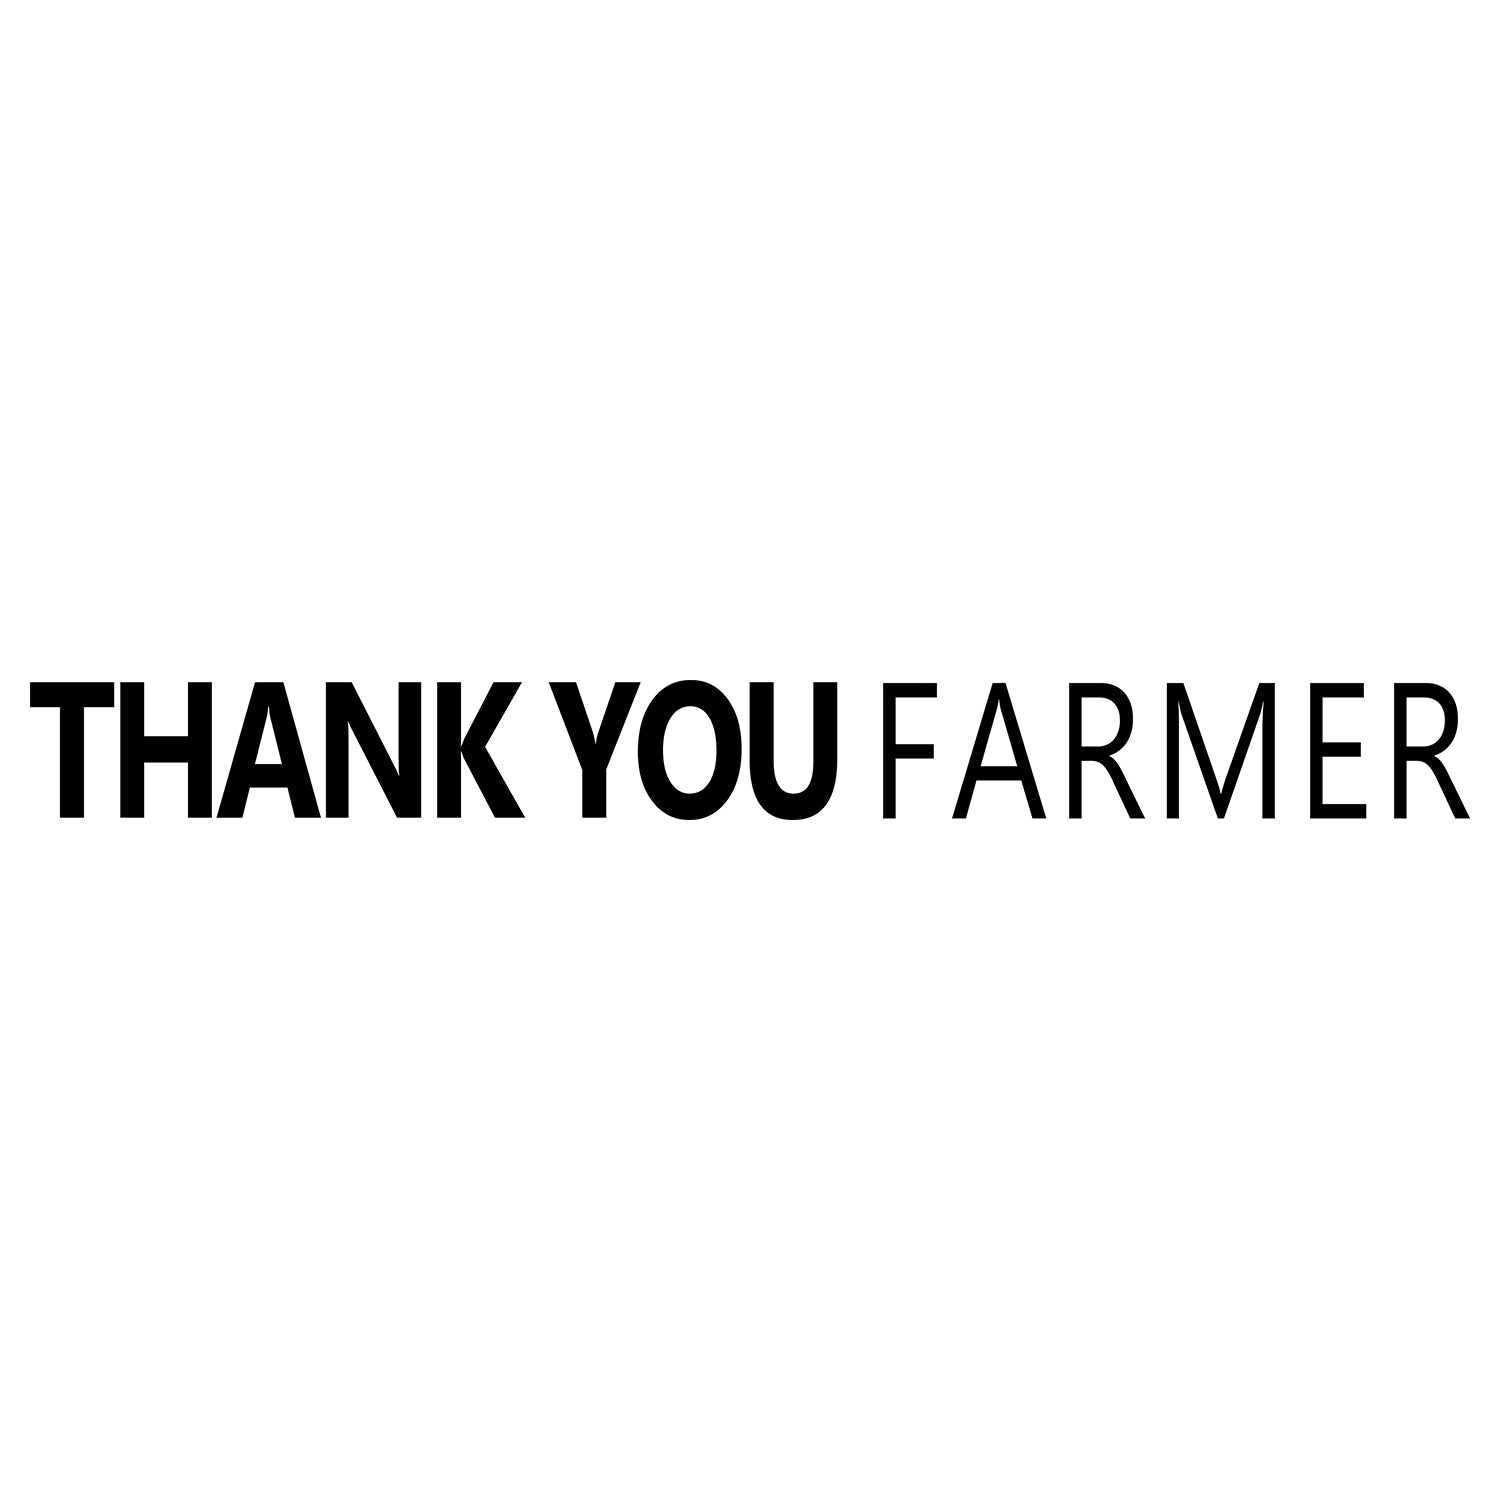 Thank You Farmer Ürünleri